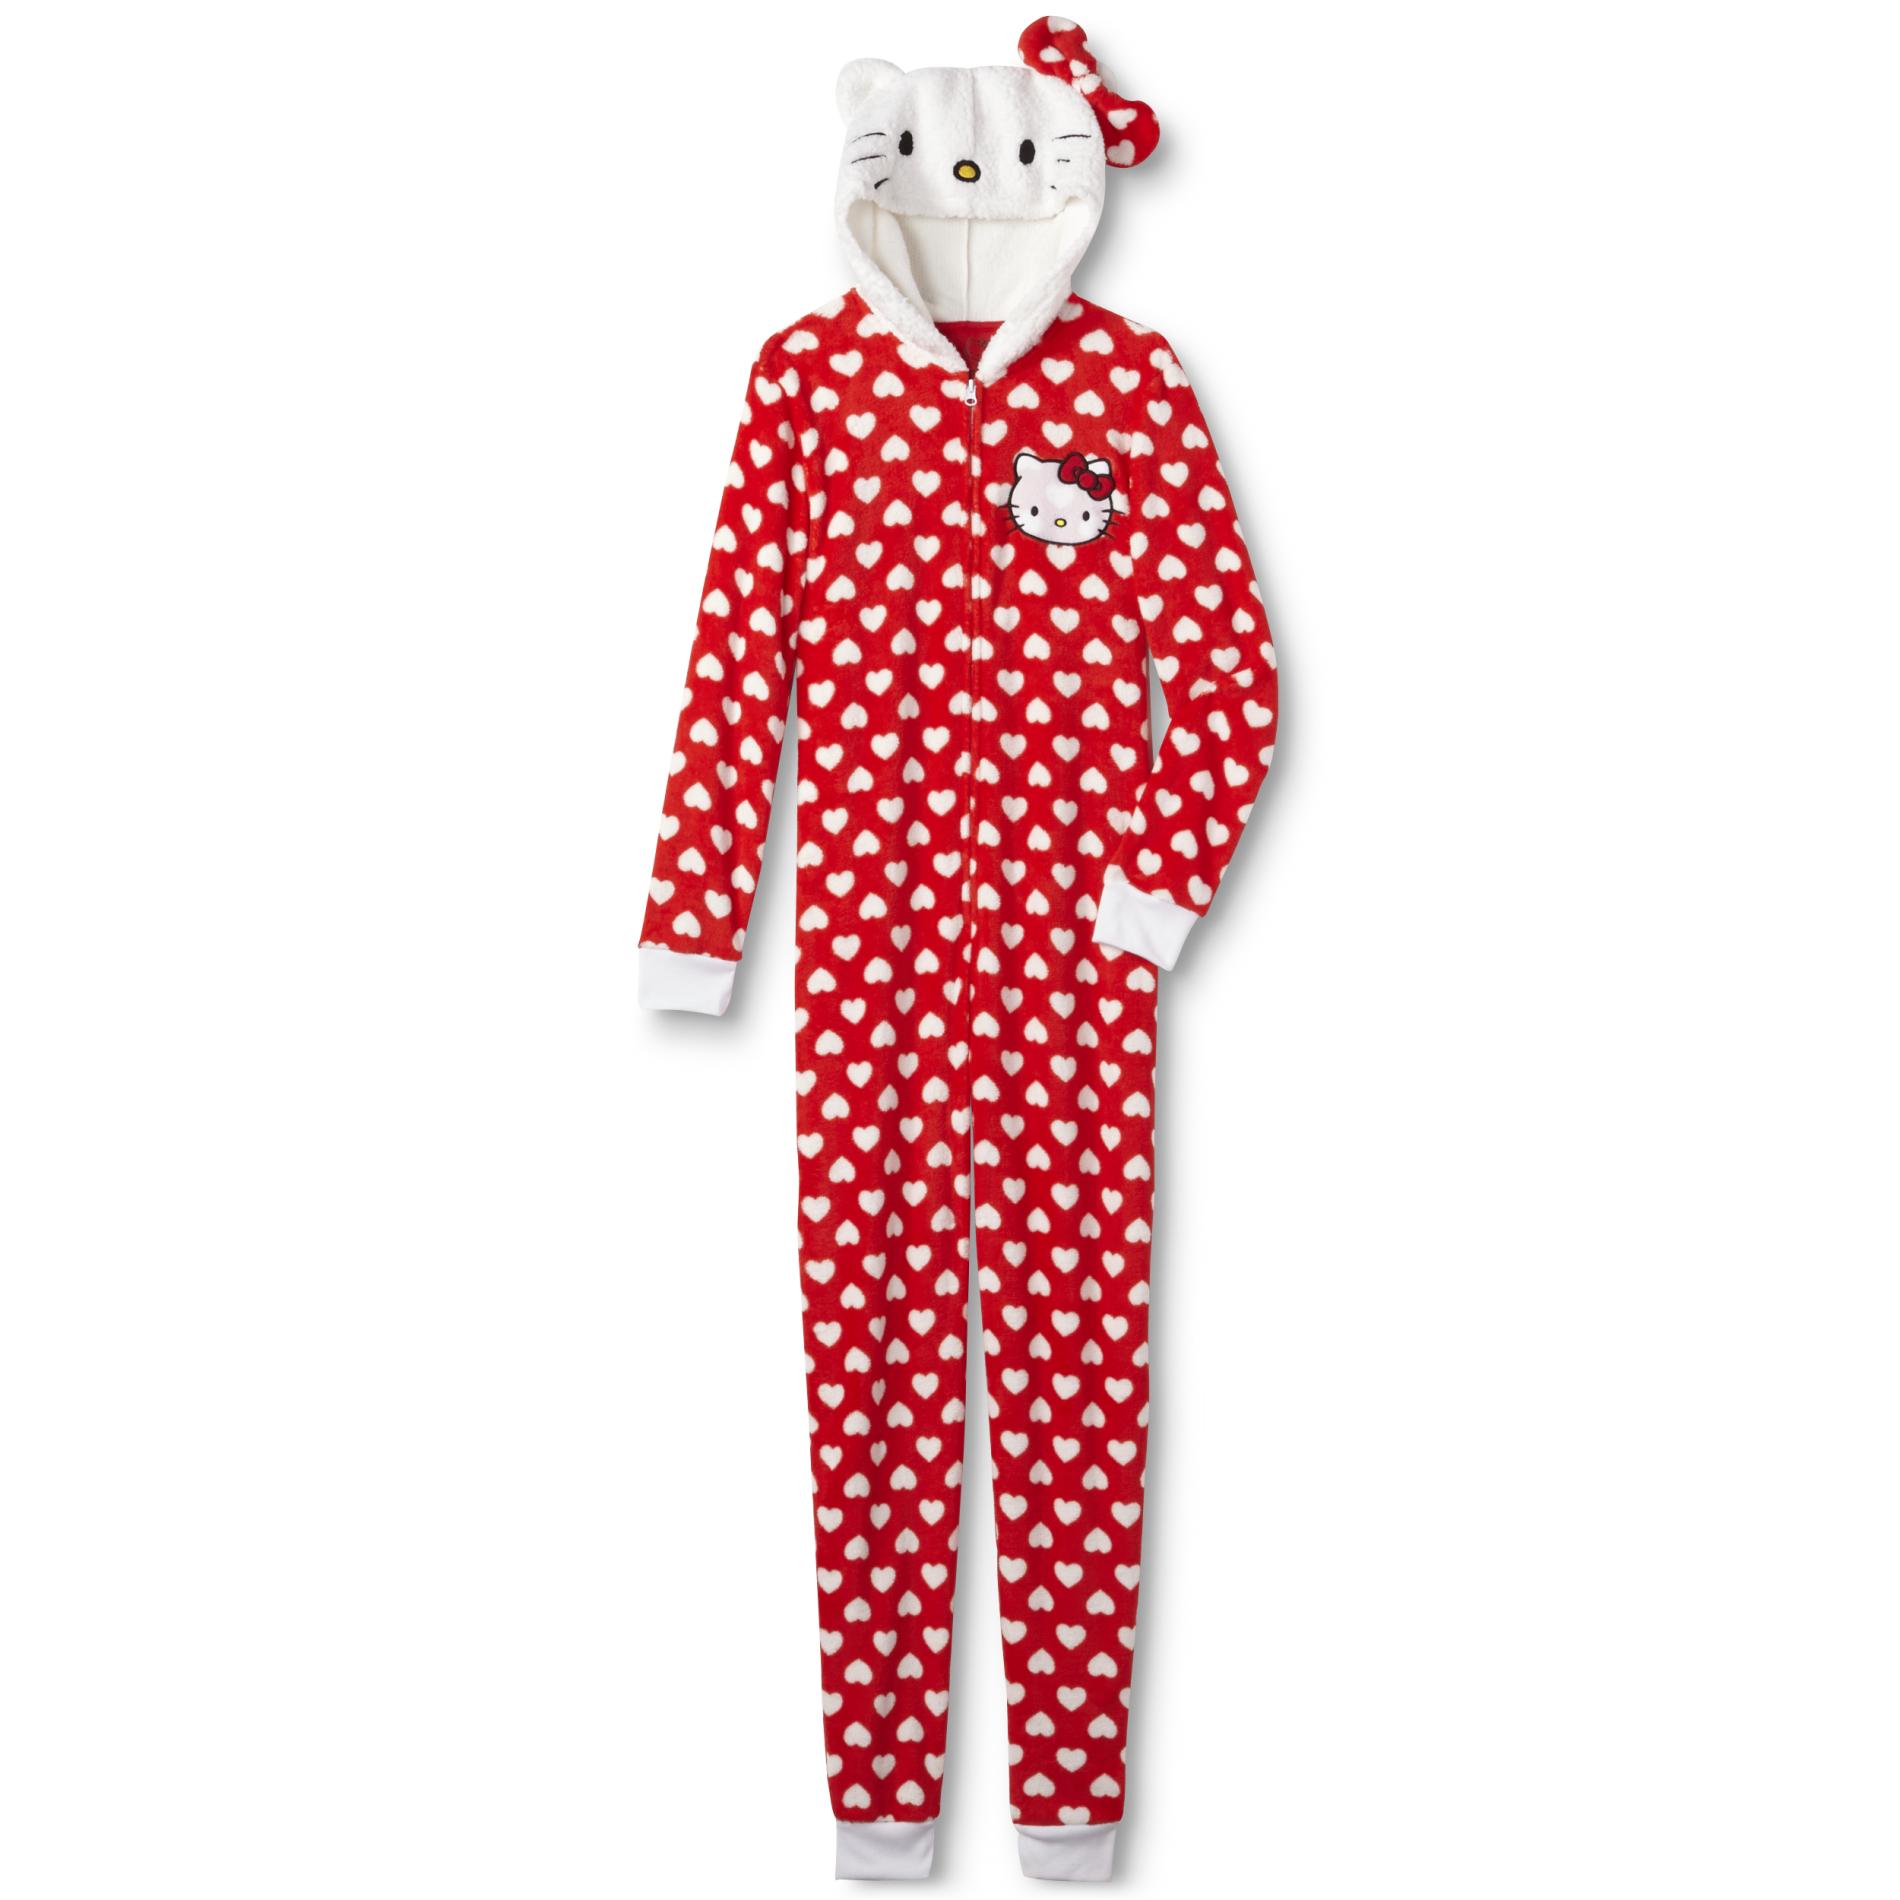 Sanrio Hello Kitty Women's One-Piece Pajamas - Polka Dot